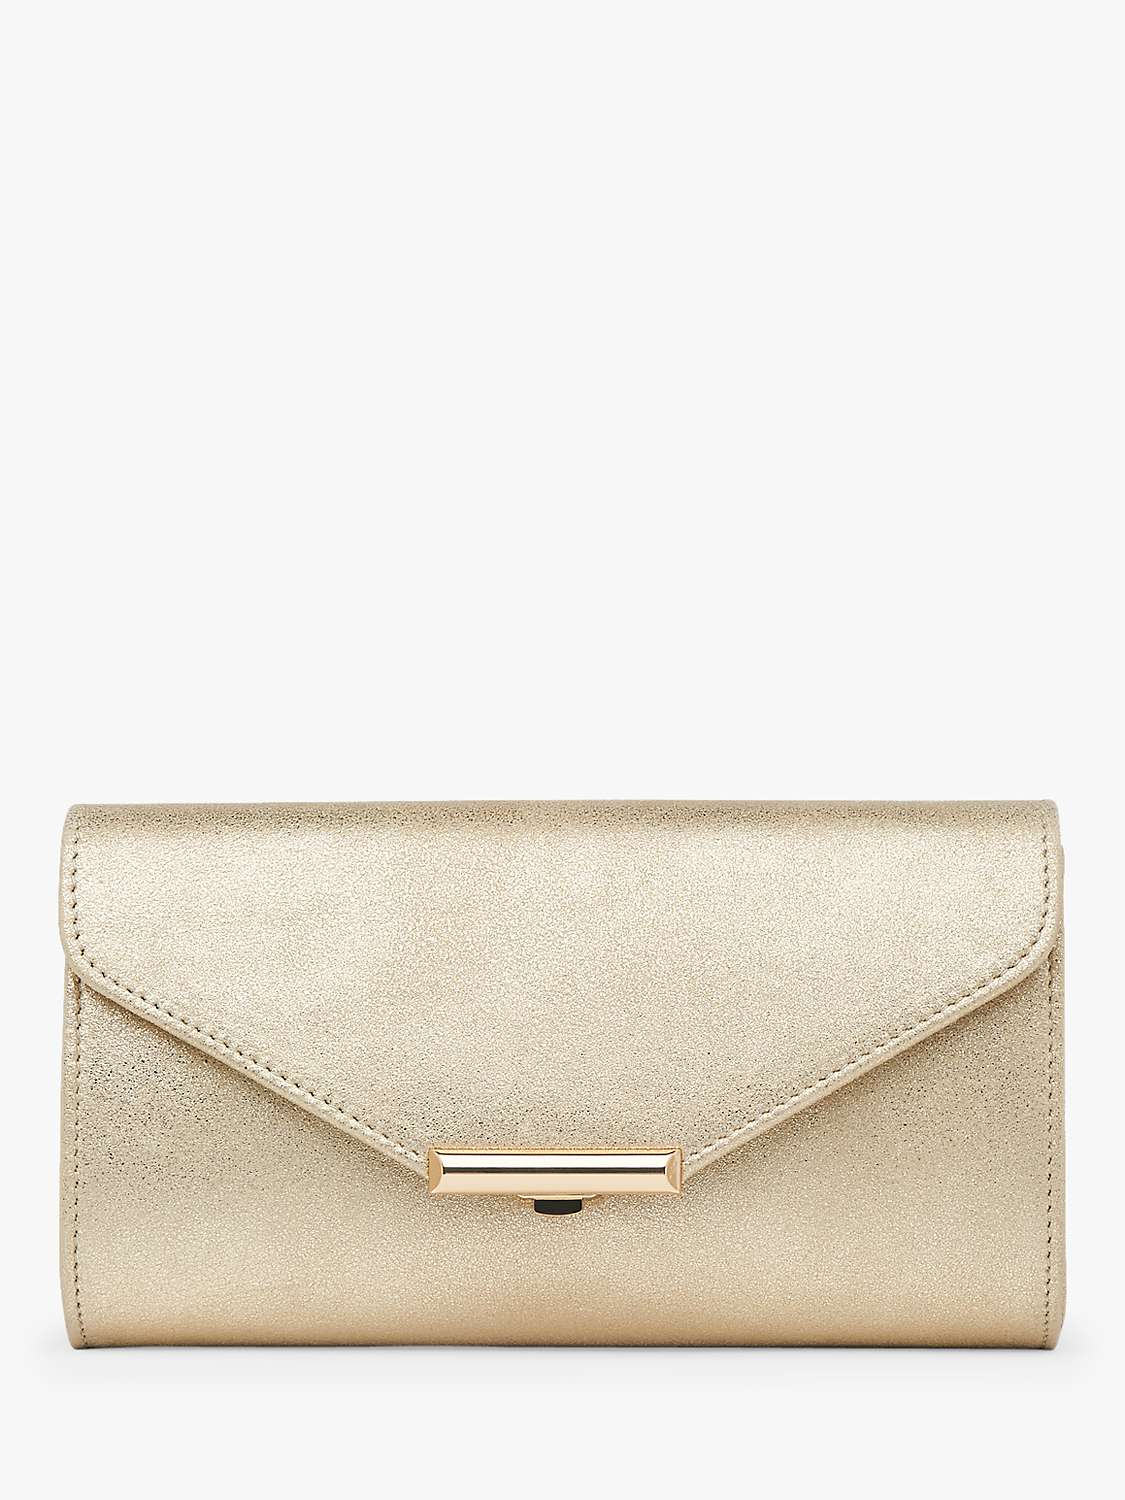 Buy L.K.Bennett Lucy Envelope Leather Clutch Bag, Gold Online at johnlewis.com